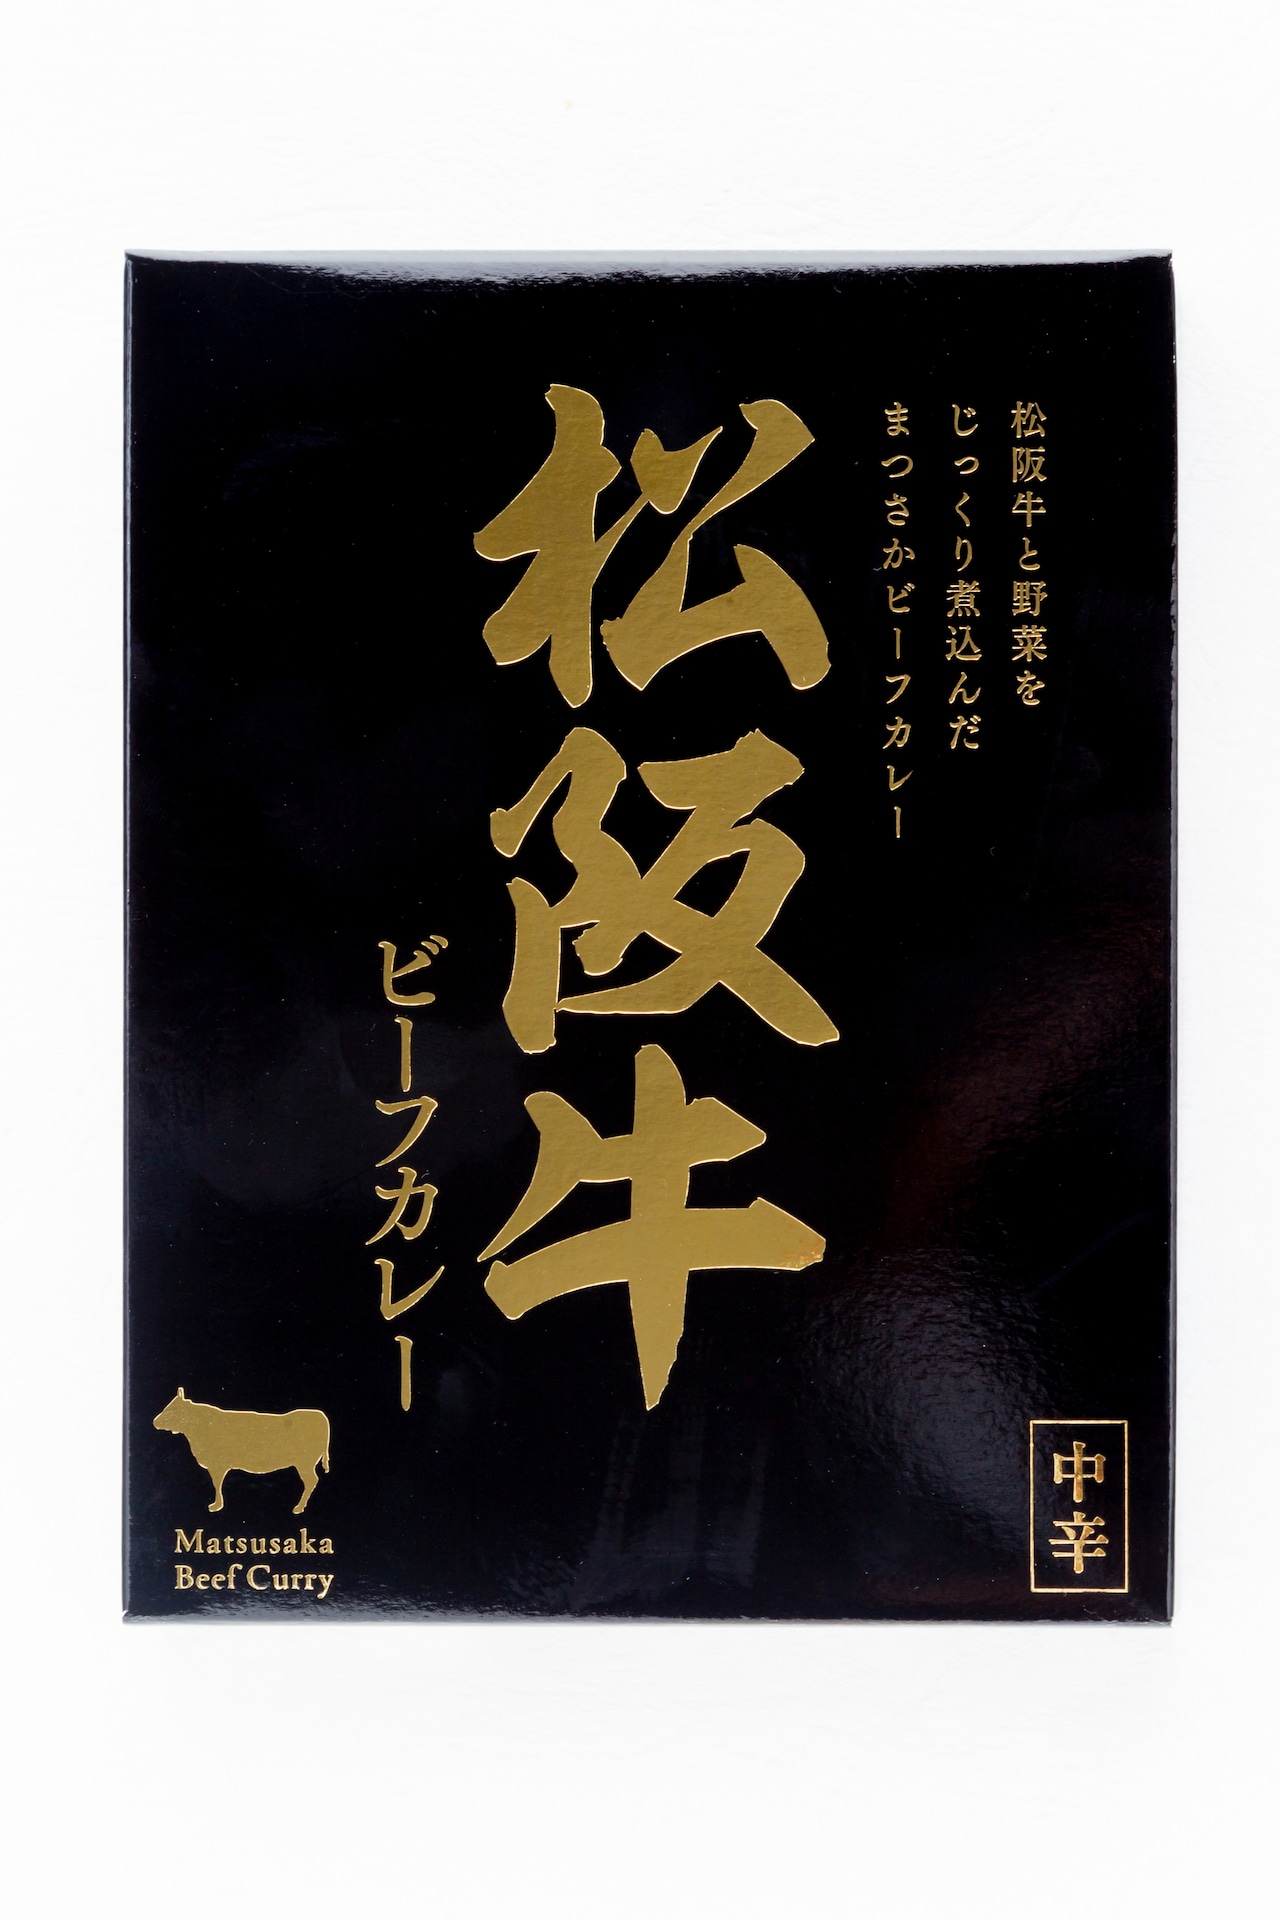 【三重斎藤物産】松阪牛ビーフカレー(180g)